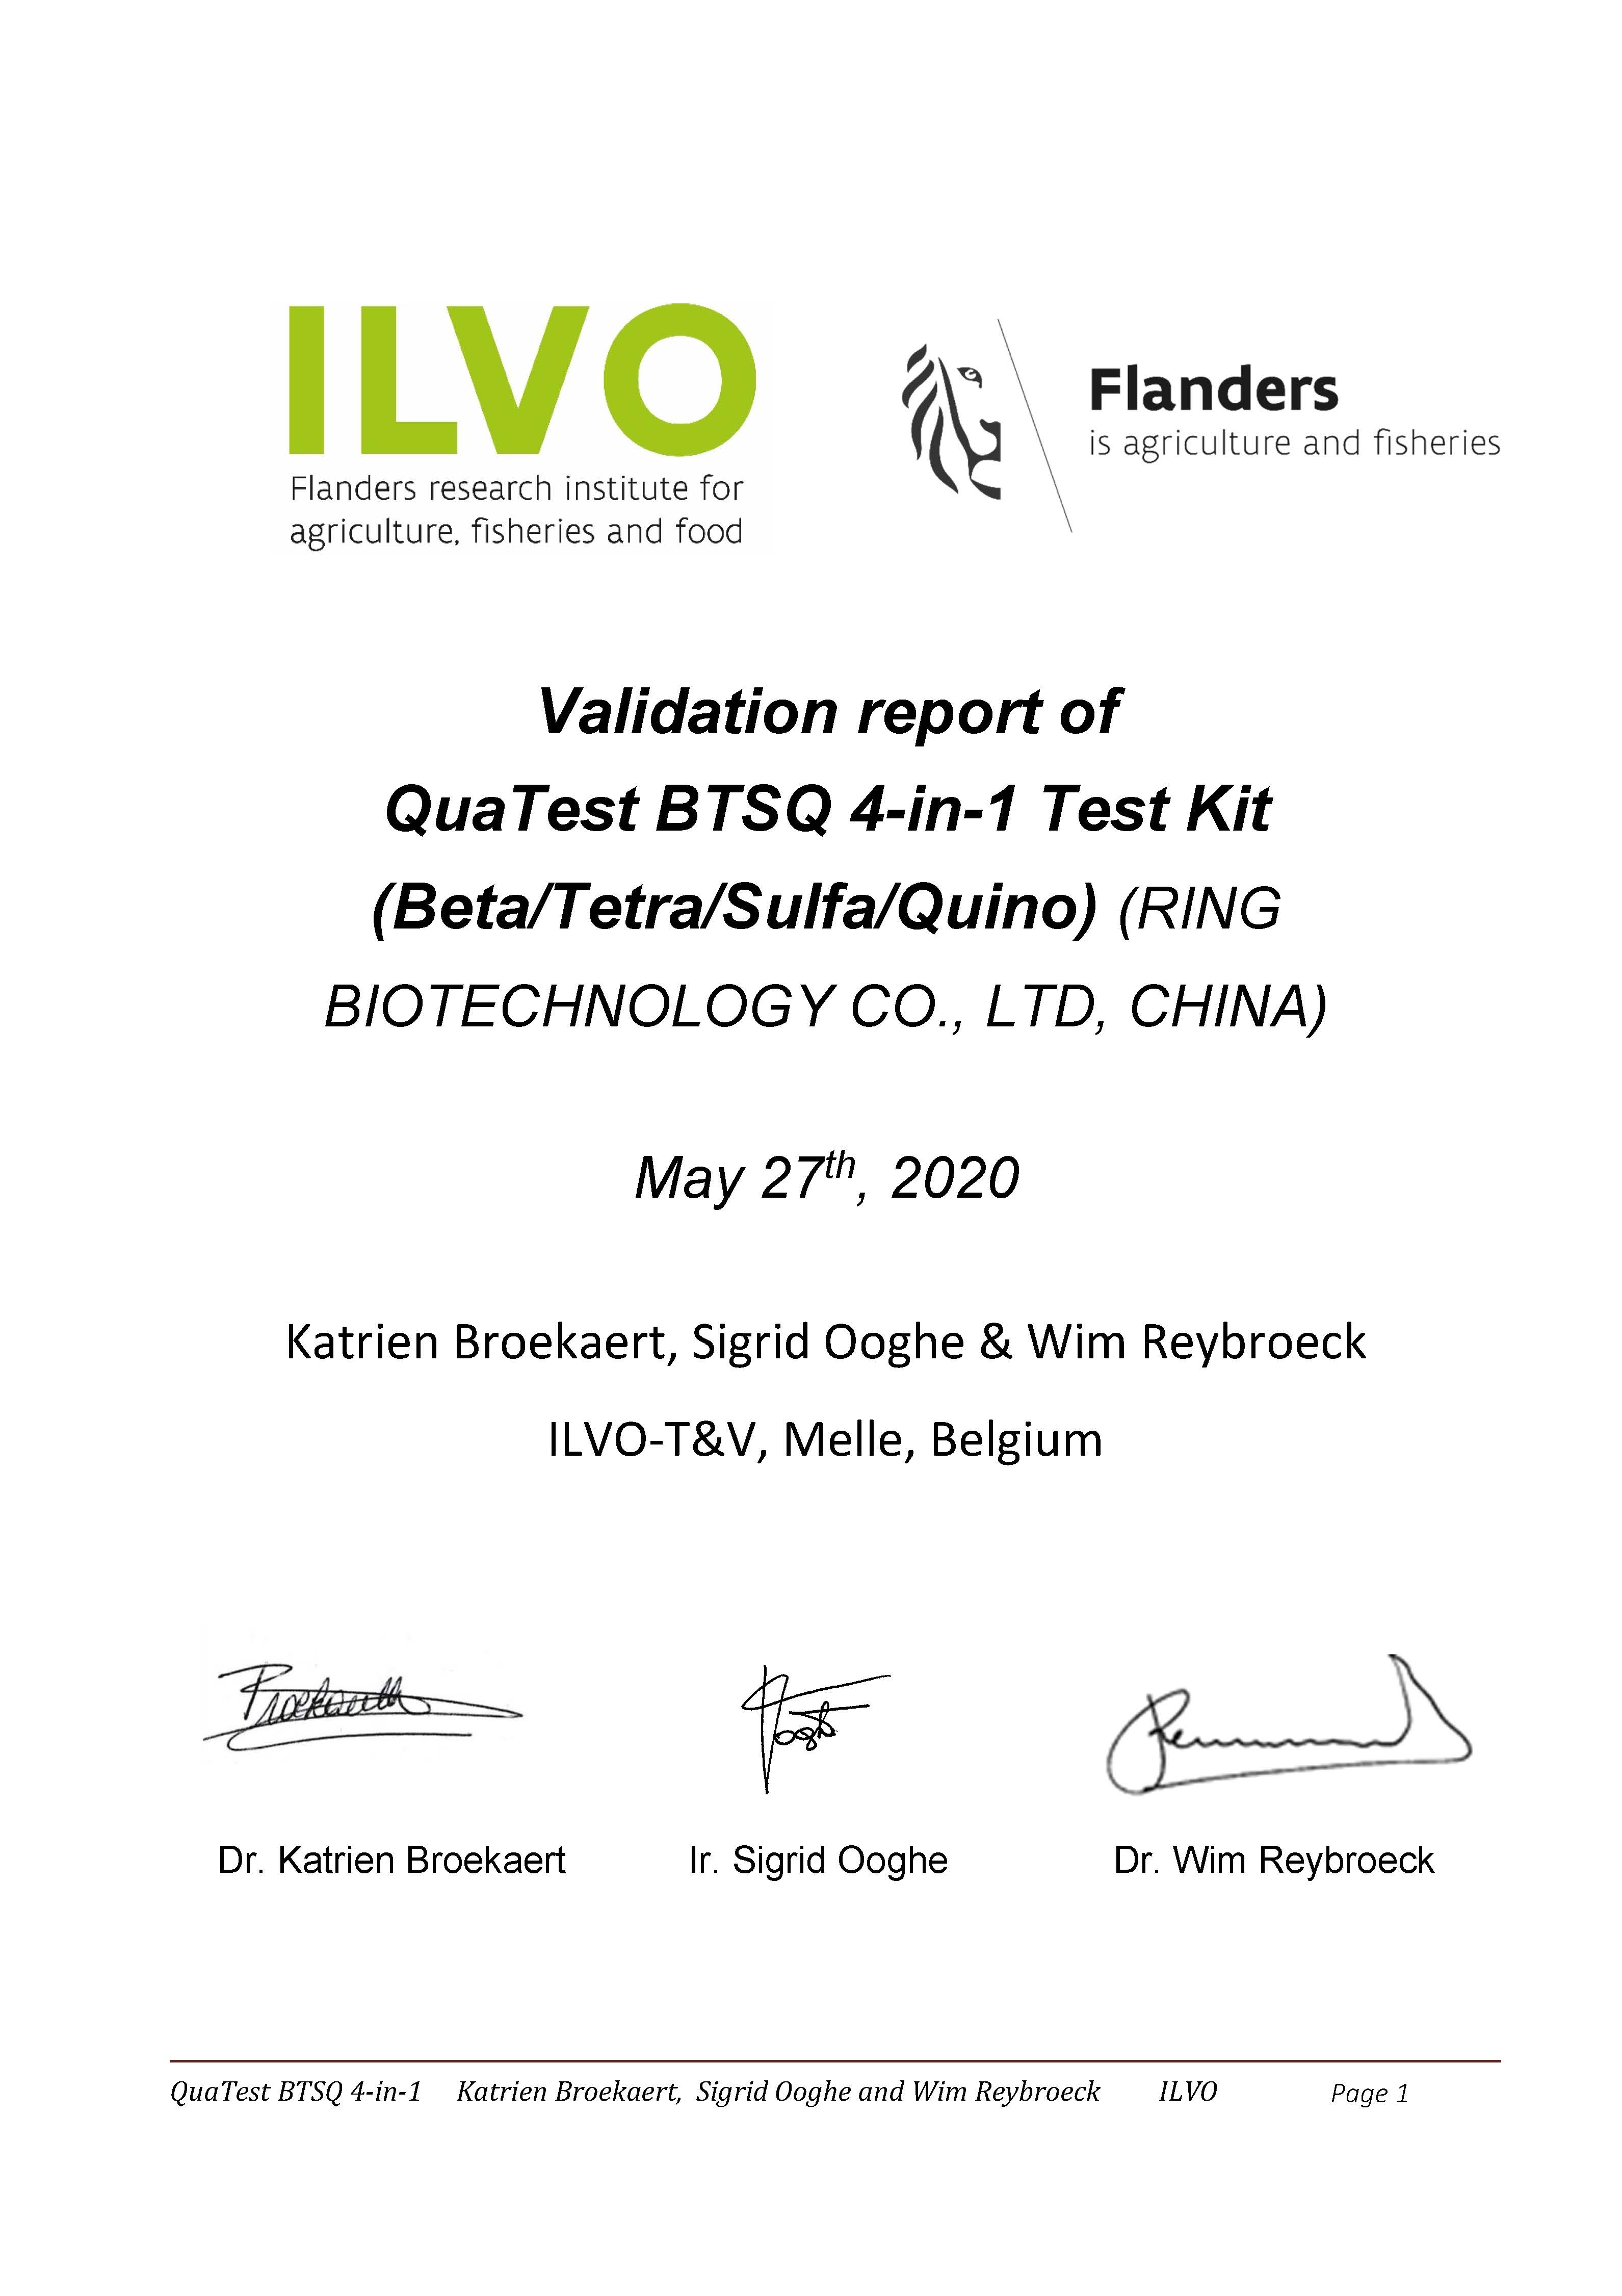 BTSQ Certificate of ILVO